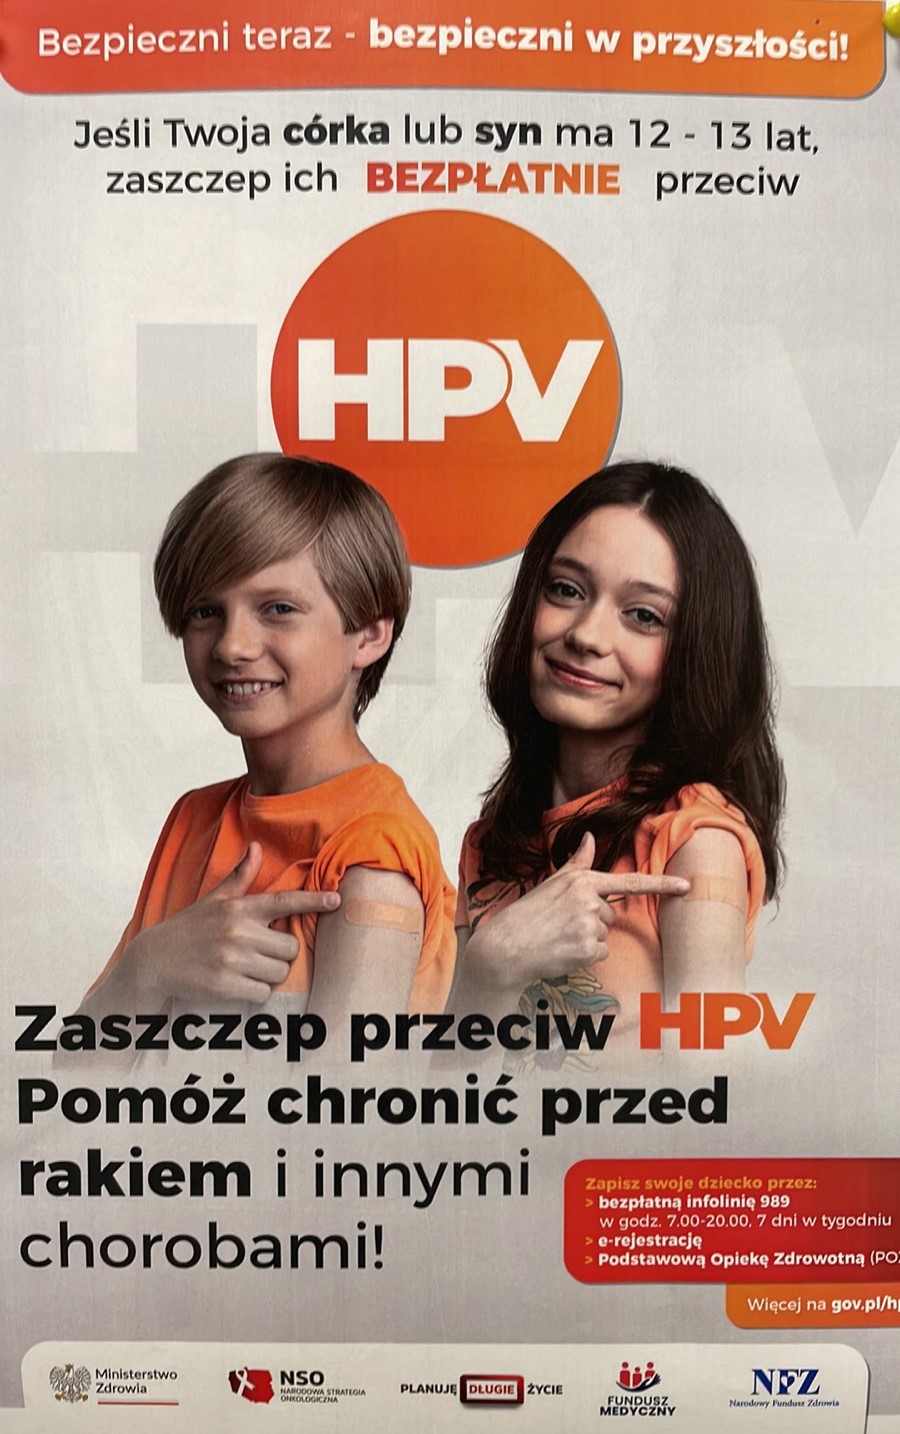 Obrazek wyróżniajcy SZCZEPIENIA PRZECIW HPV